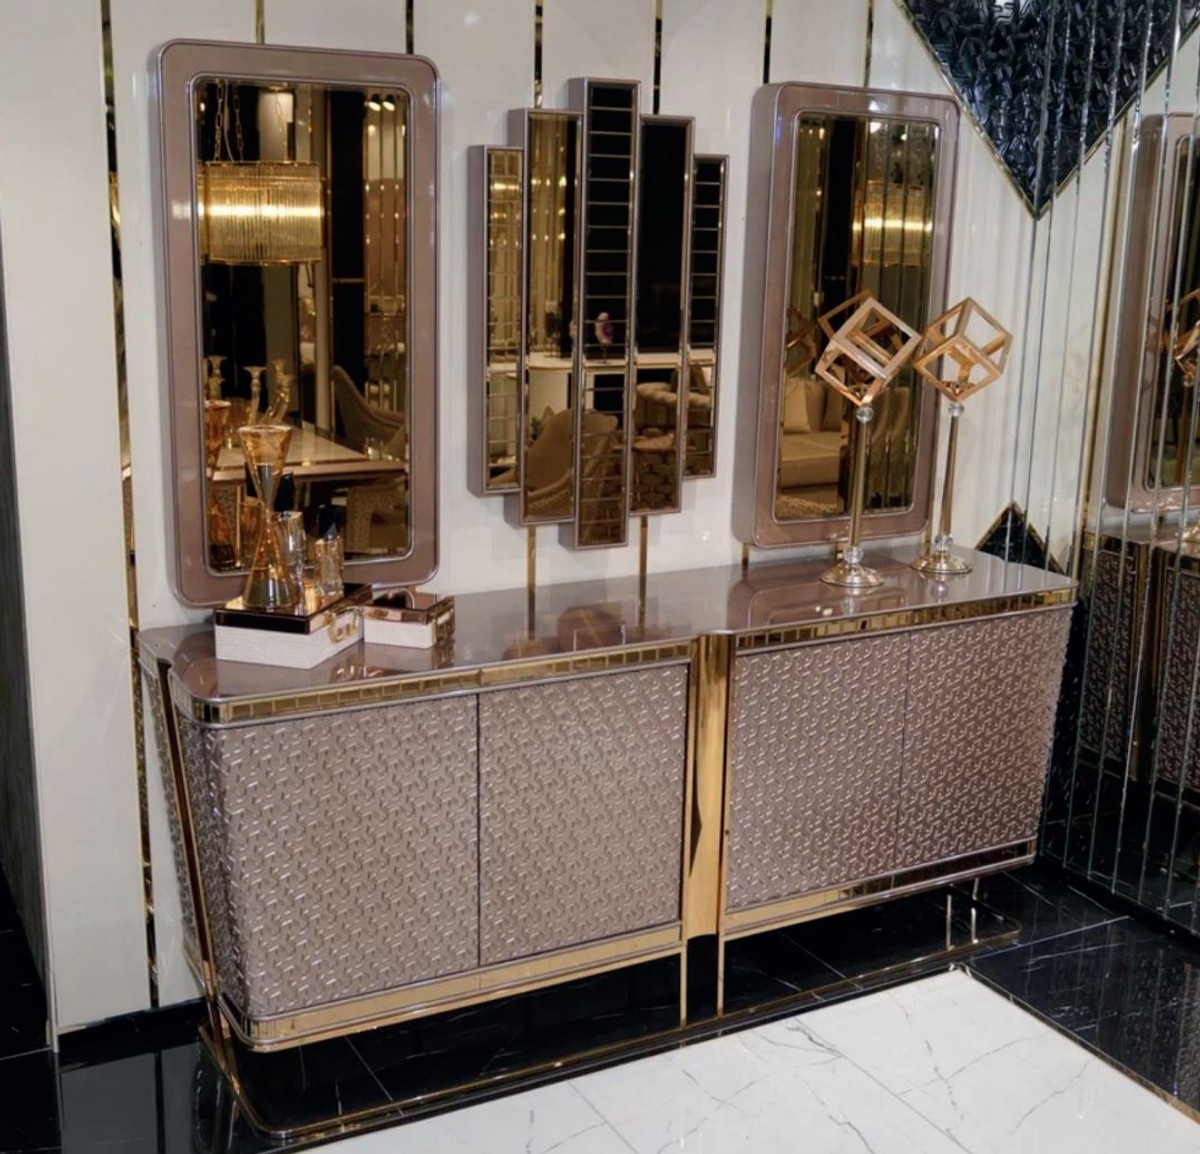 Casa Padrino Luxus Möbel Set Grau / Gold - 1 Luxus Sideboard mit 4 Türen & 3 Luxus Spiegel - Luxus Möbel - Luxus Kollektion